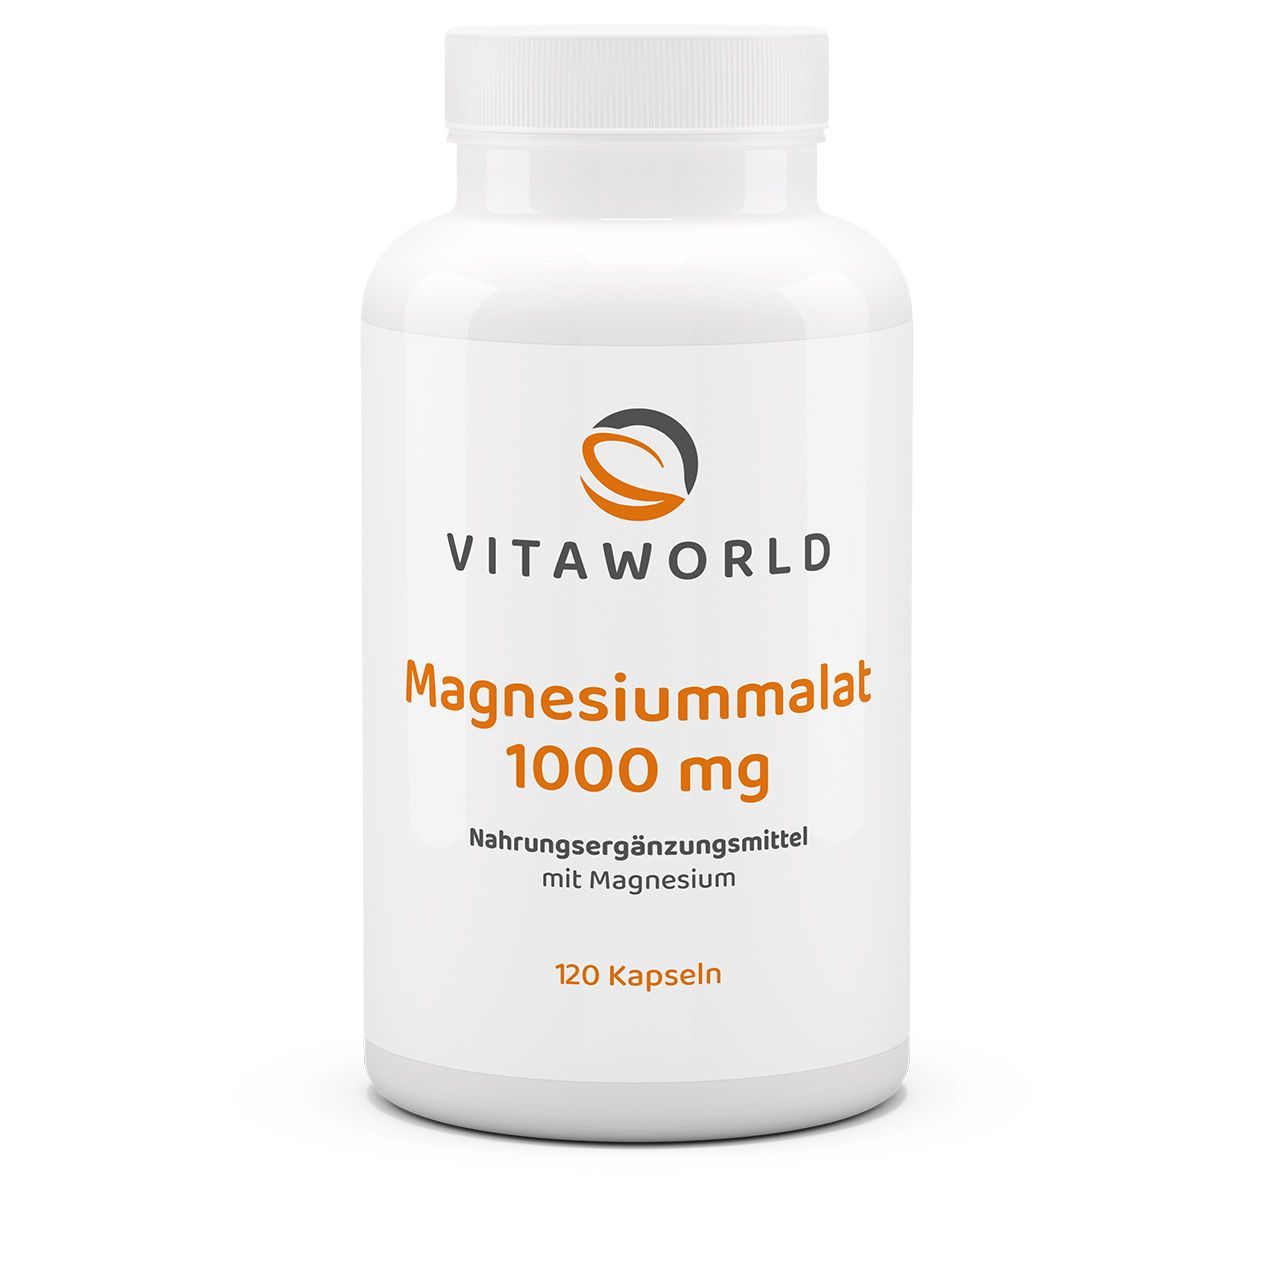 Vitaworld Magnesiummalat 1000 mg | 120 Kapseln | vegan | gluten- und laktosefrei